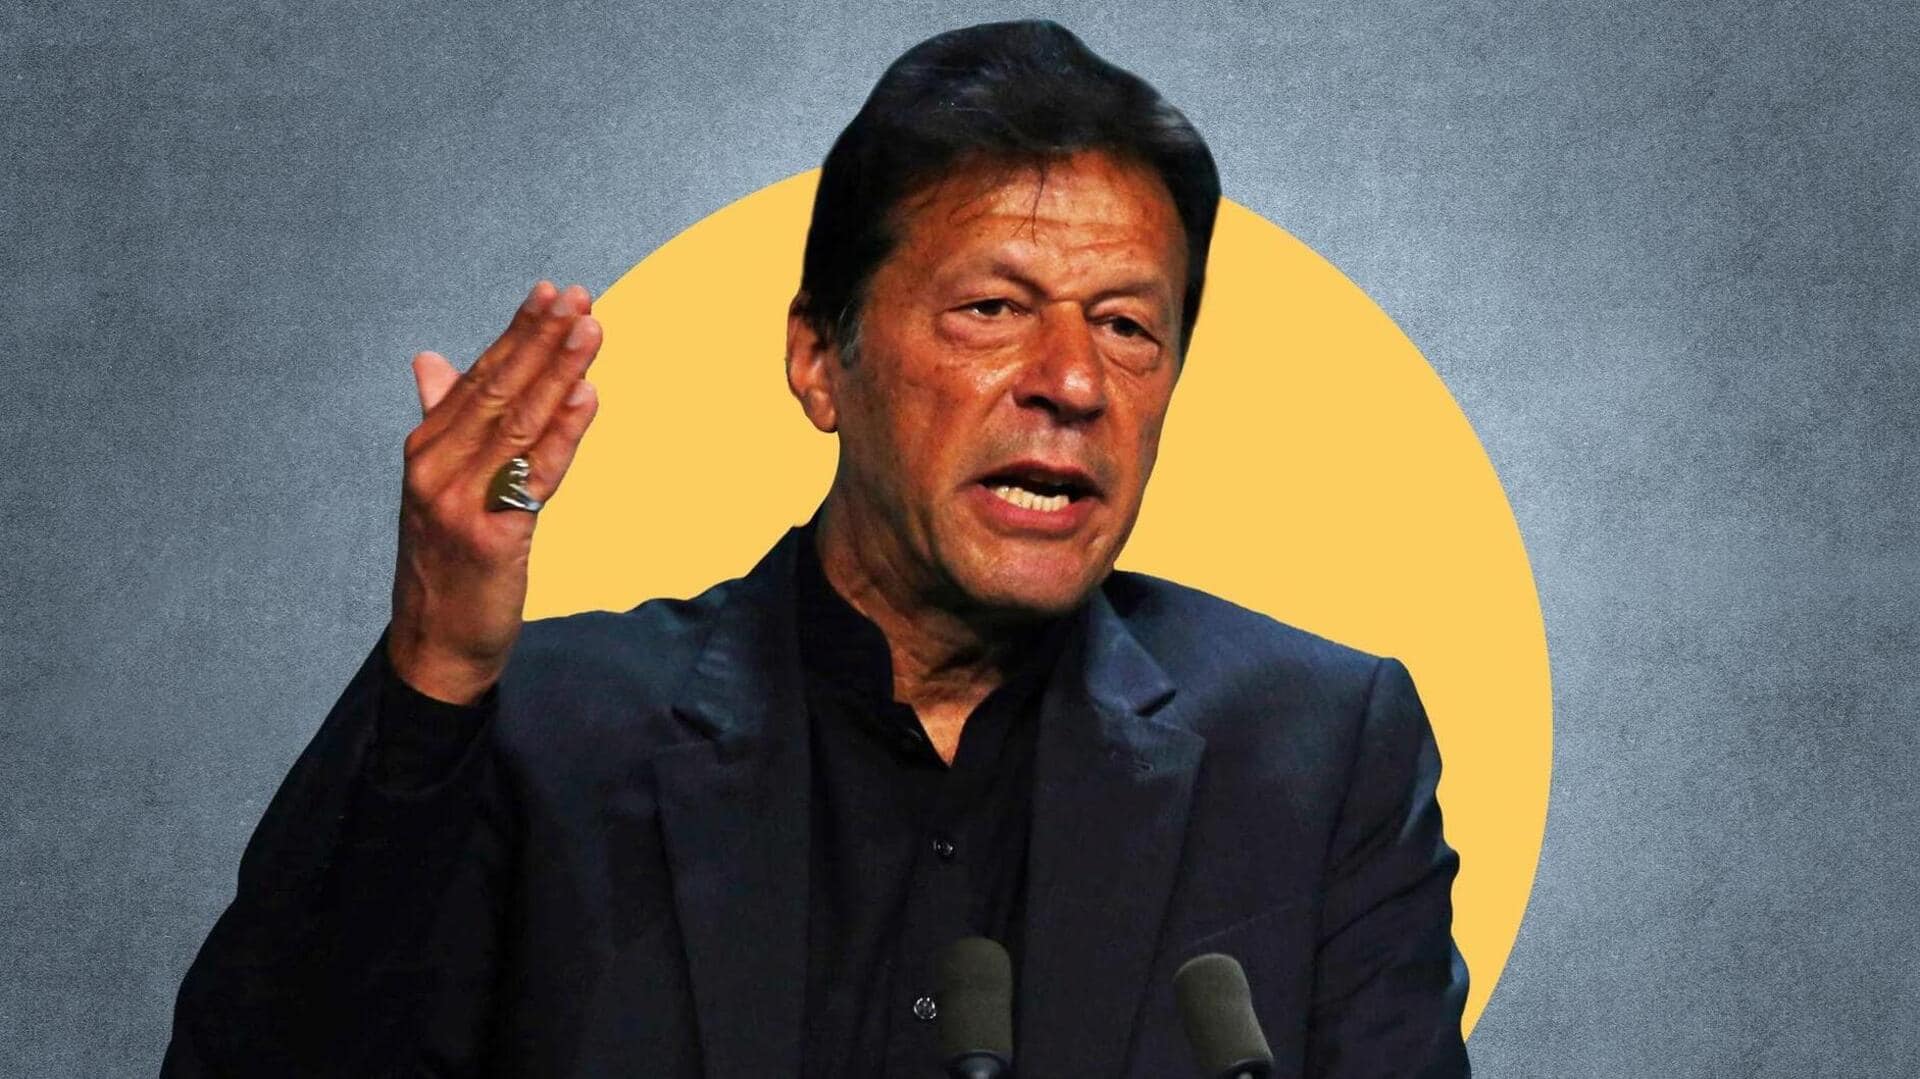 पाकिस्तान: चुनाव आयोग ने पूर्व प्रधानमंत्री इमरान खान के खिलाफ गैर-जमानती गिरफ्तारी वारंट जारी किया